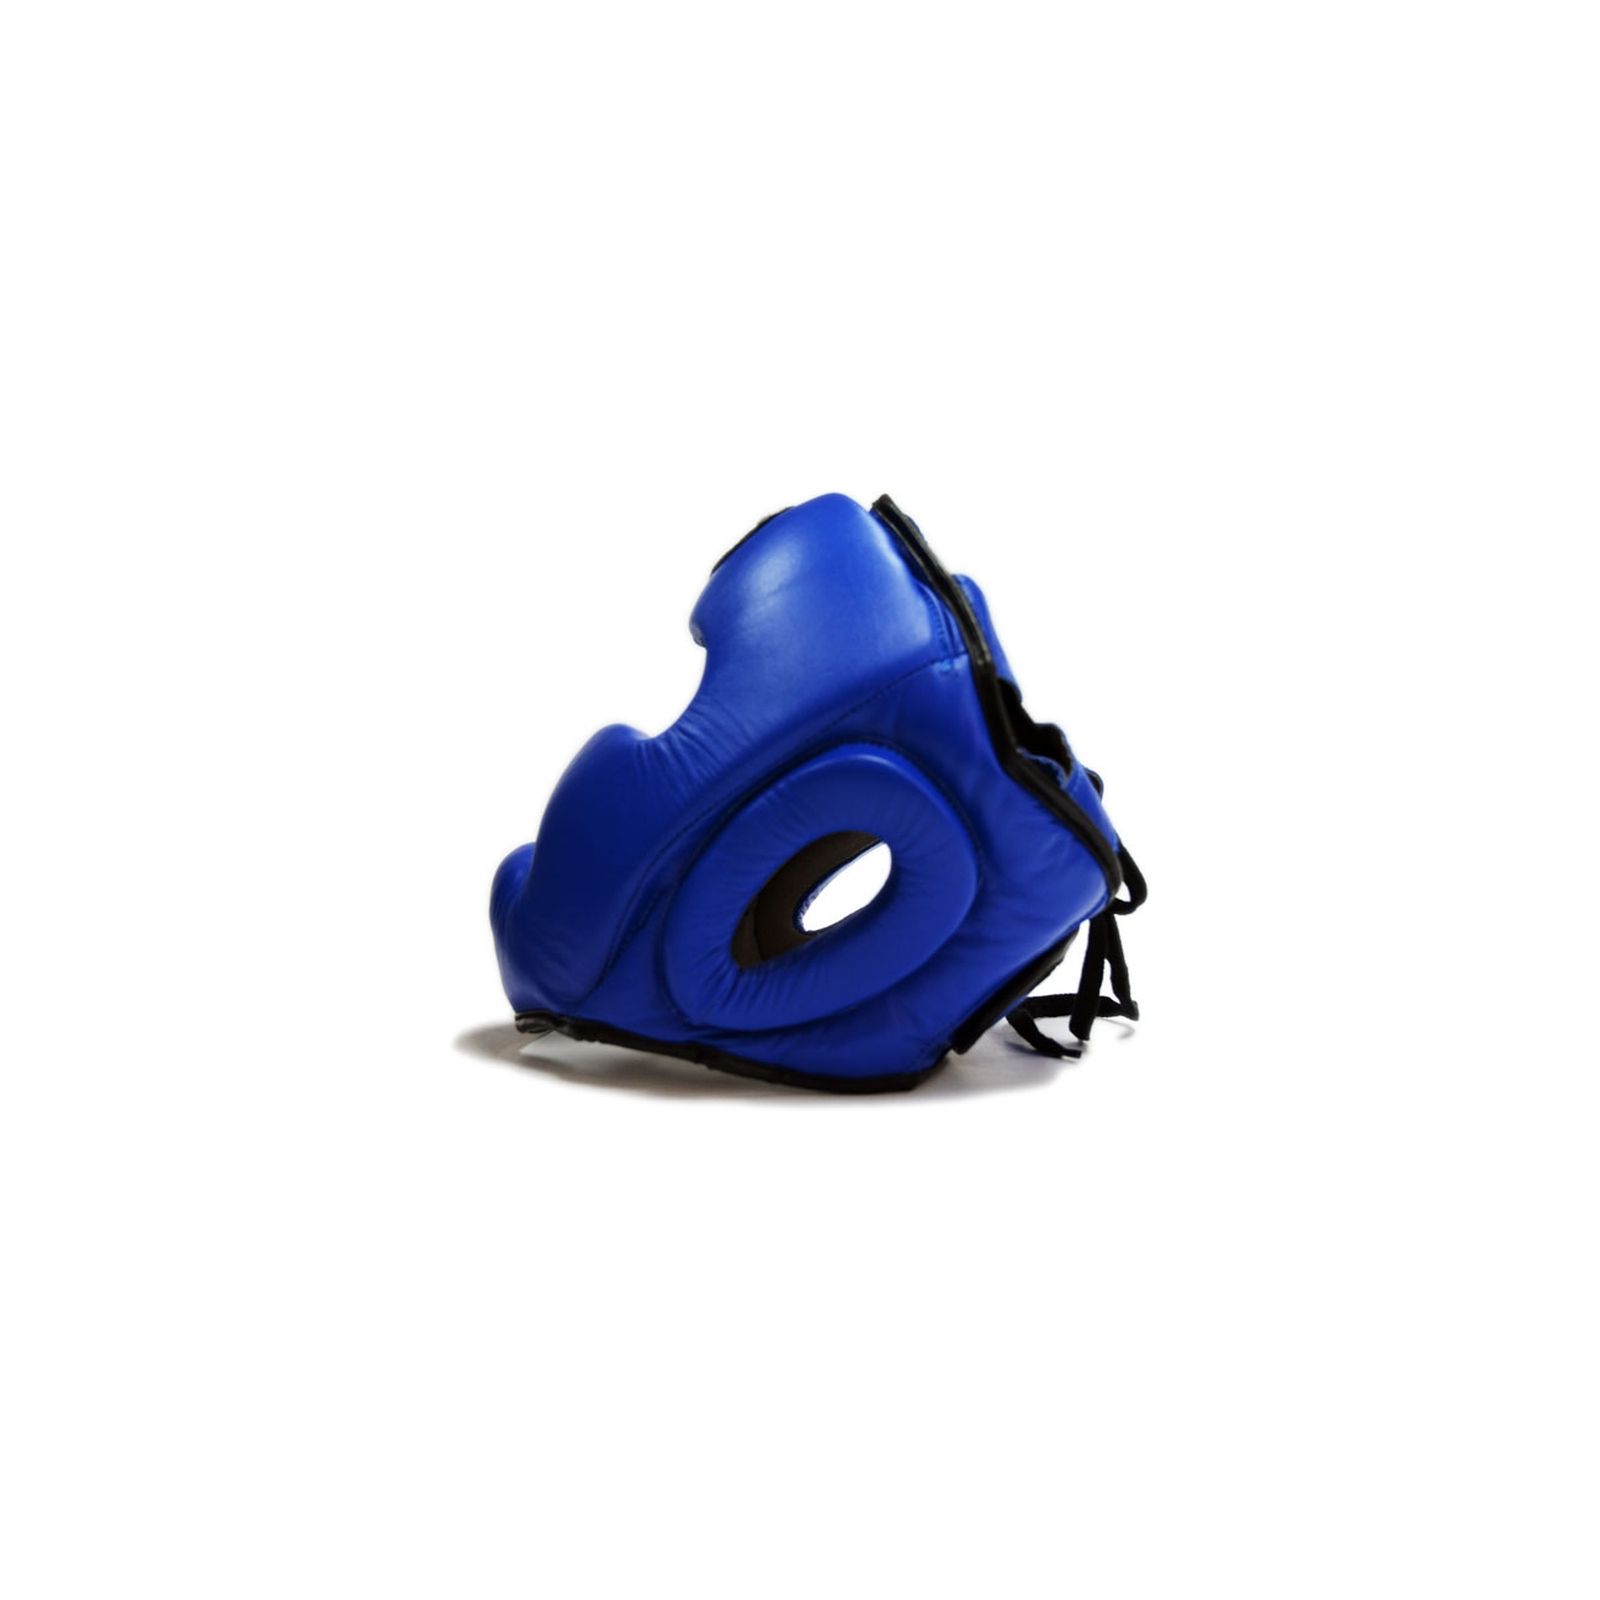 Боксерський шолом Thor 705 S Шкіра Синій (705 (Leather) BLUE S) зображення 2